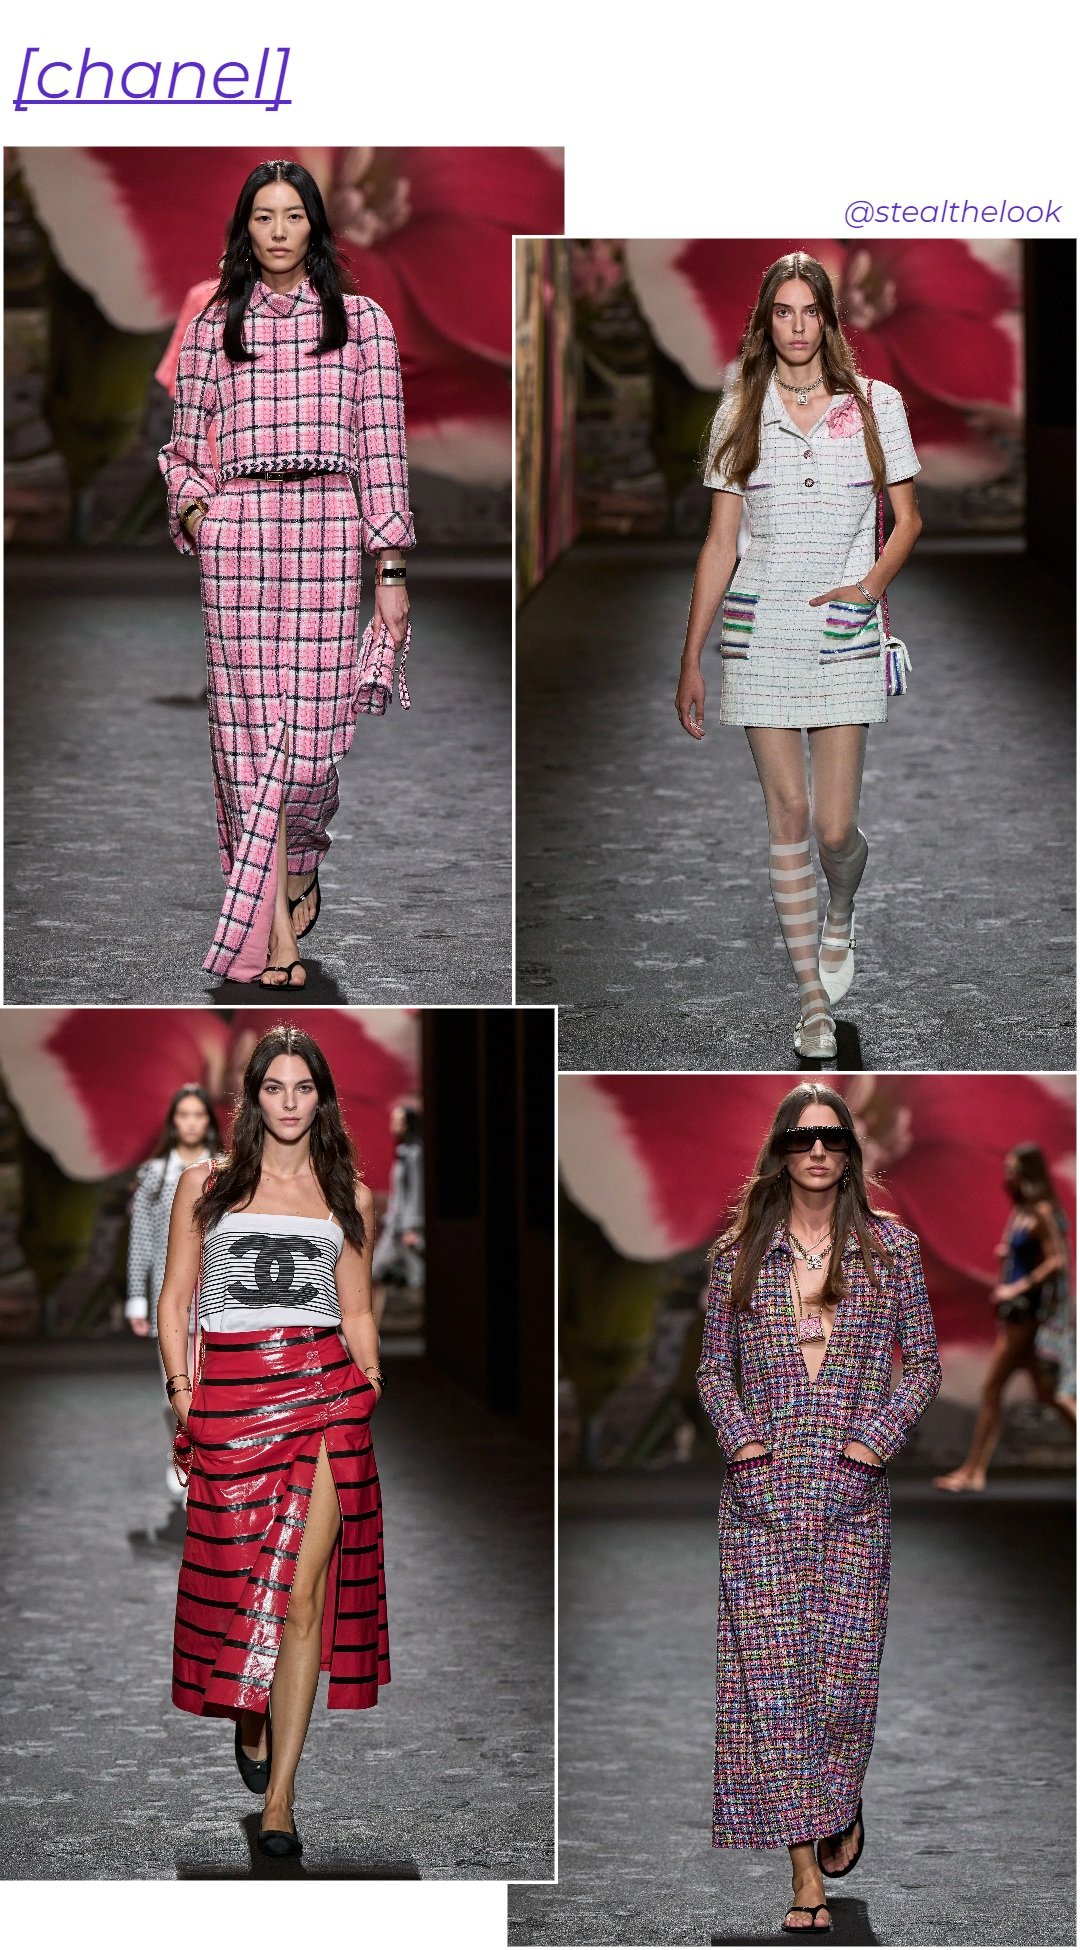 Chanel - roupas diversas - tendências de moda - verão - colagem de imagens - https://stealthelook.com.br